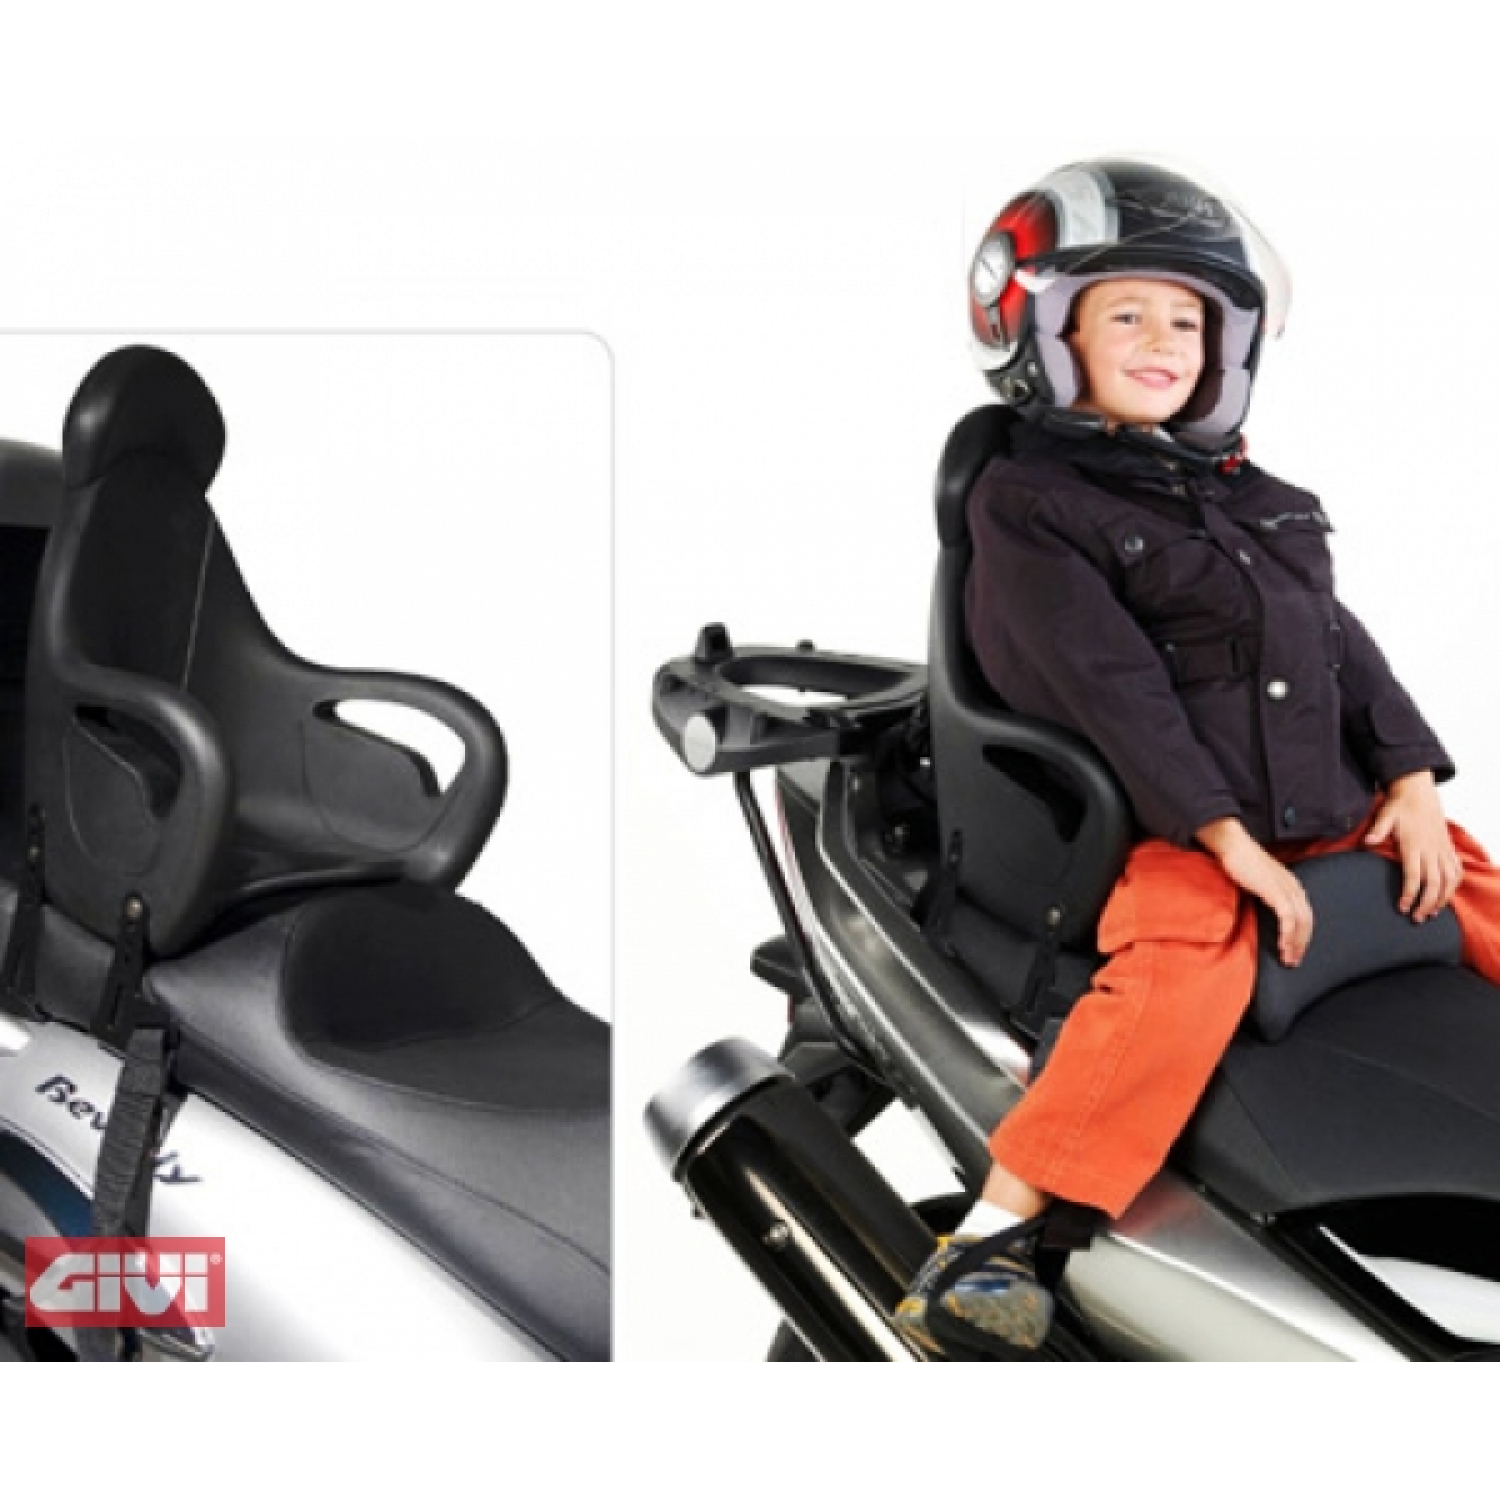 Kindersitz GiVi universal für Roller und Motorräder  Heavy Tuned: Günstige  Preise für Rollerteile, Motorrad Ersatzteile, Mofa, Vespa & mehr